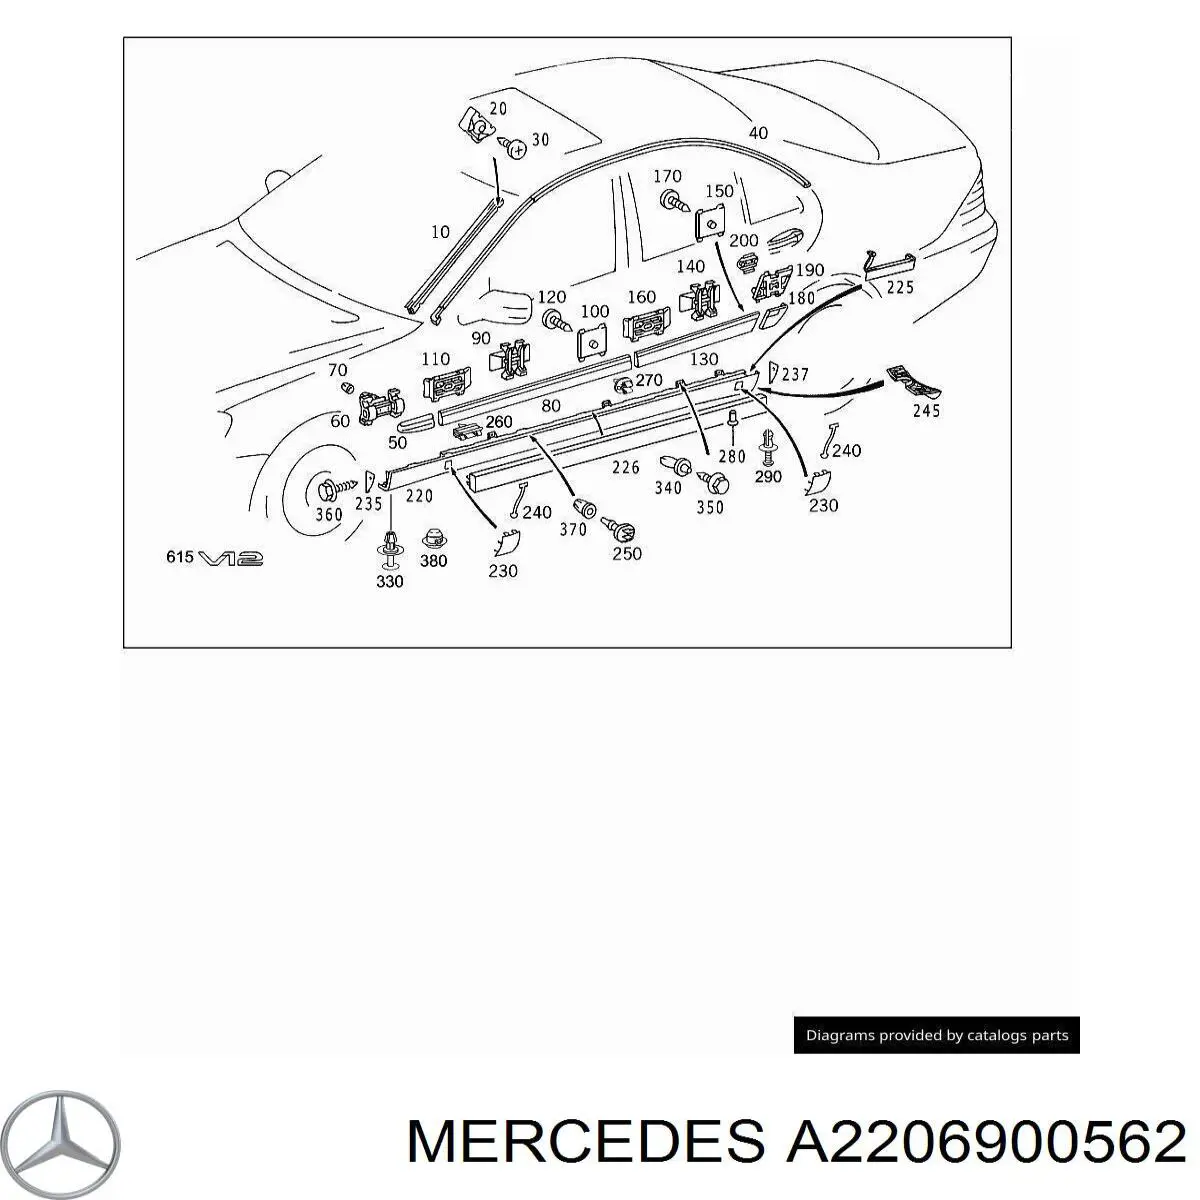 A2206900562 Mercedes moldura de puerta delantera izquierda superior